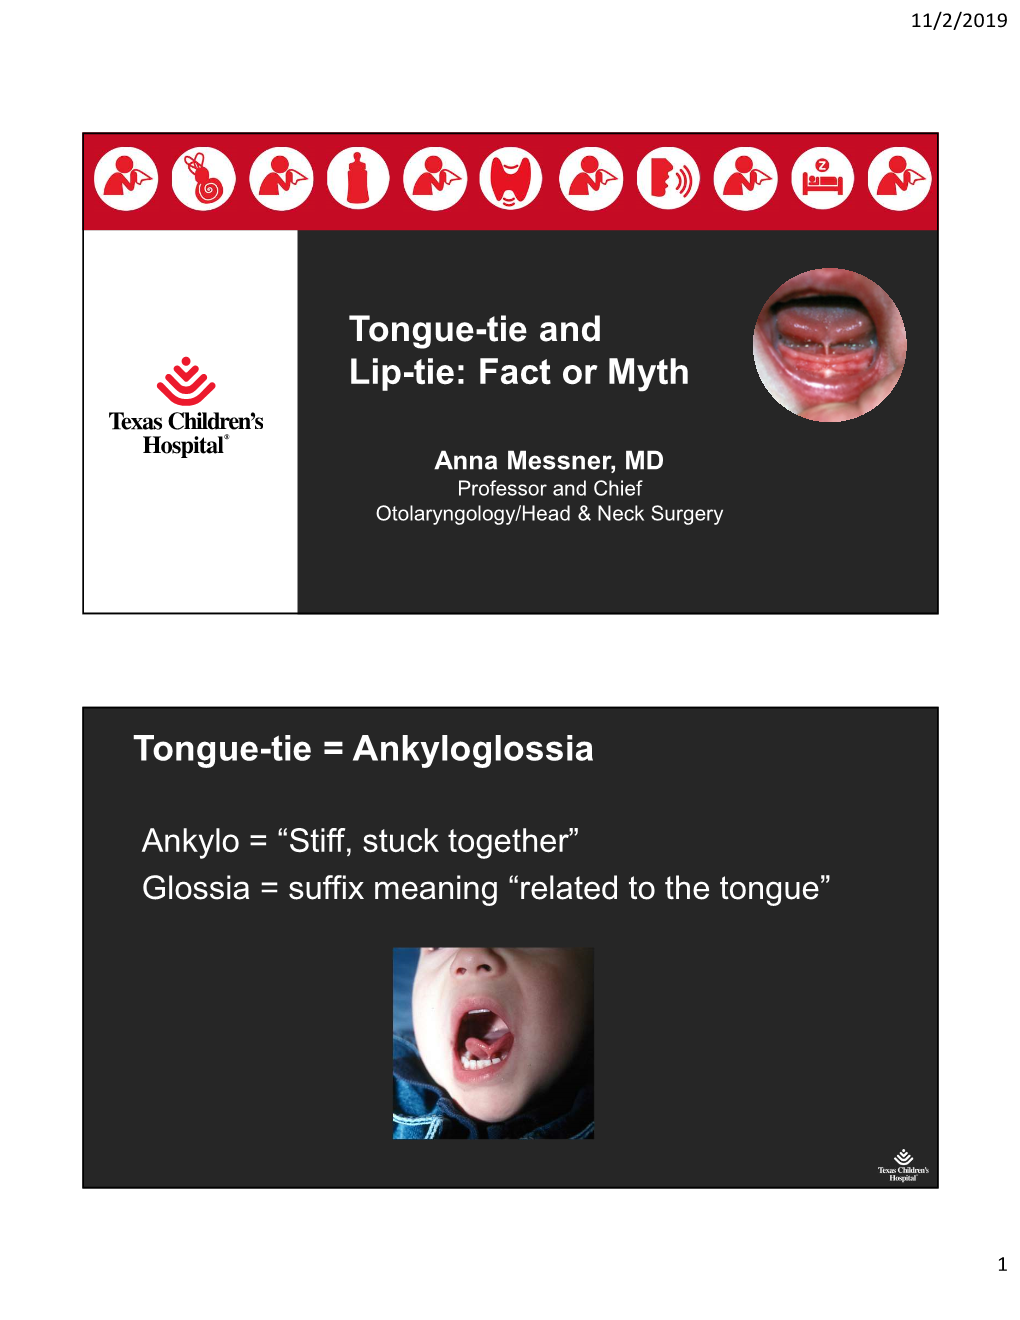 Fact Or Myth Tongue-Tie = Ankyloglossia